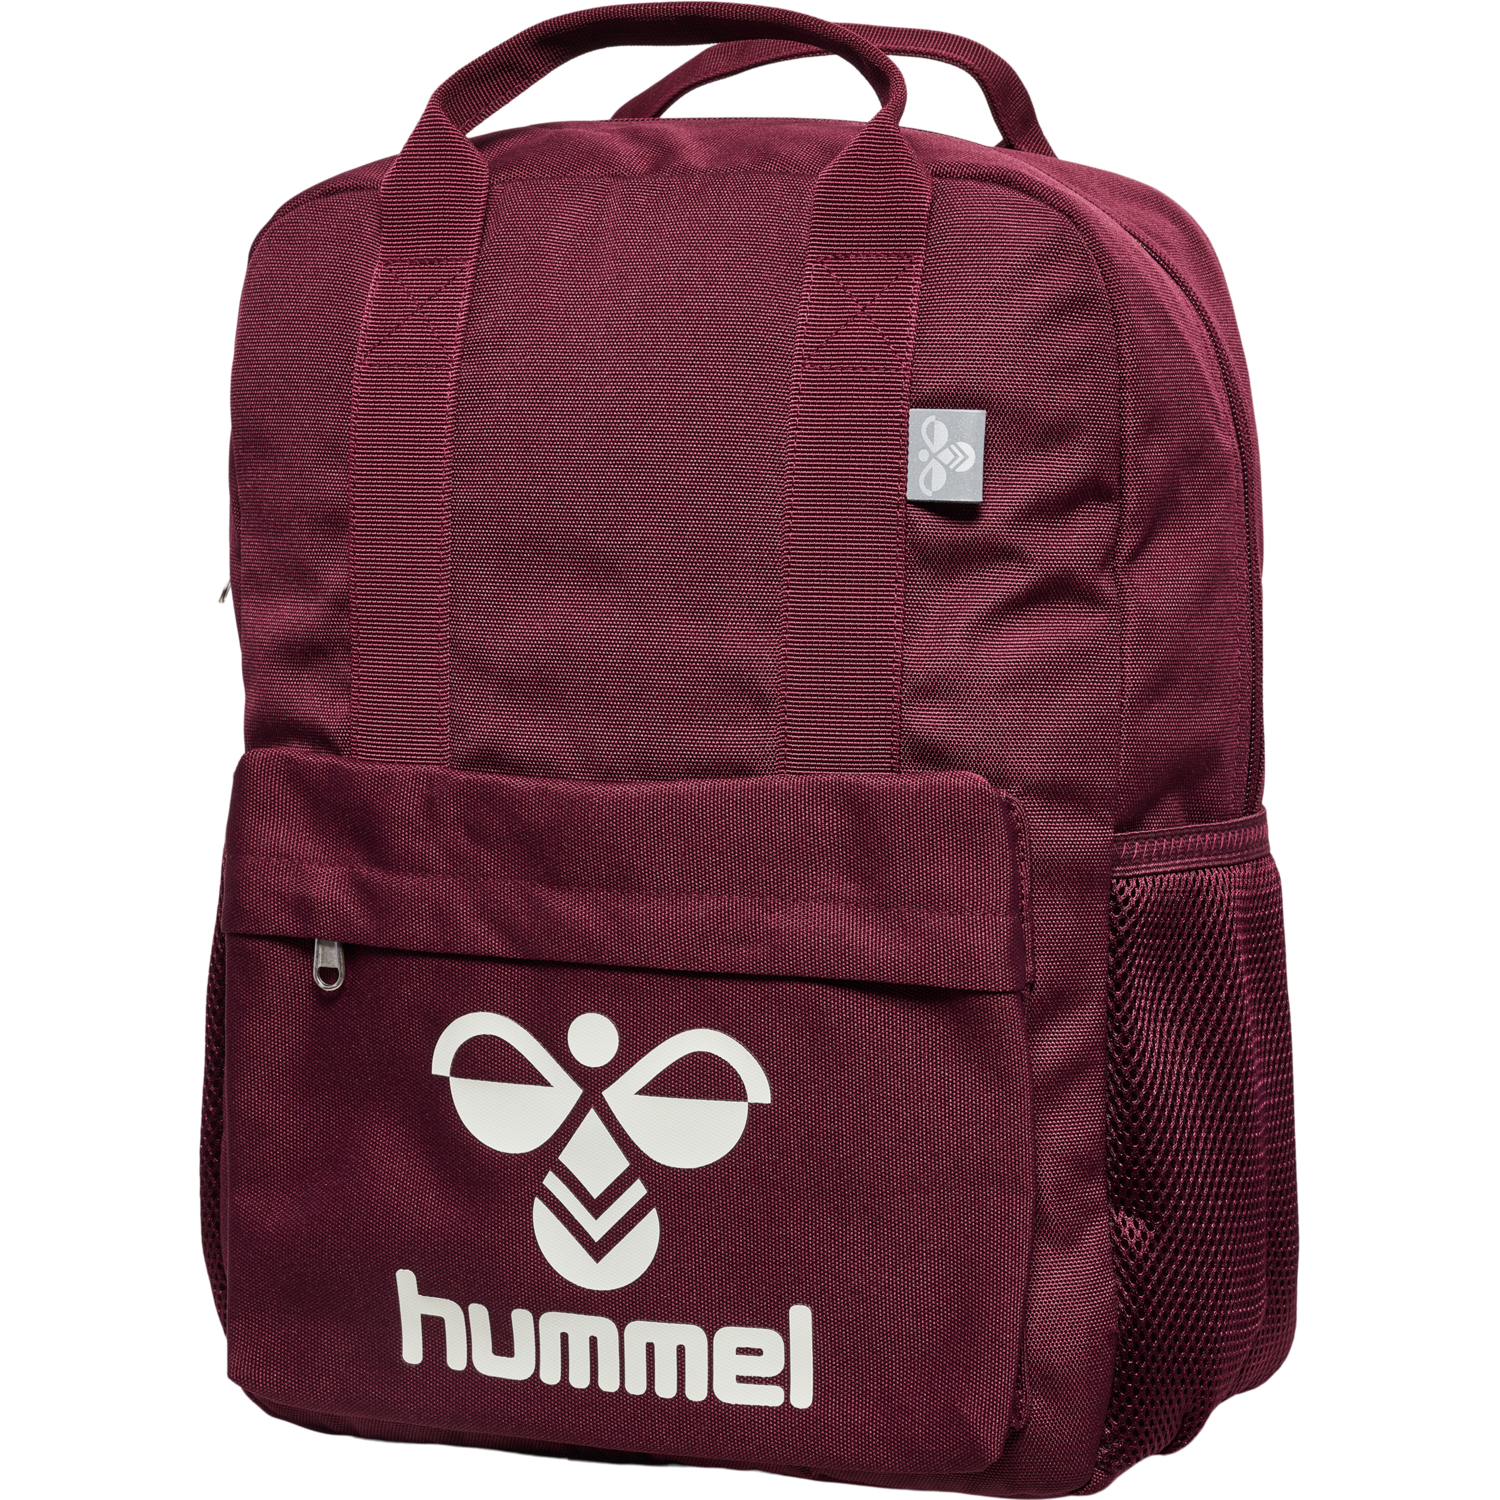 Hummel  Hmljazz Back Pack